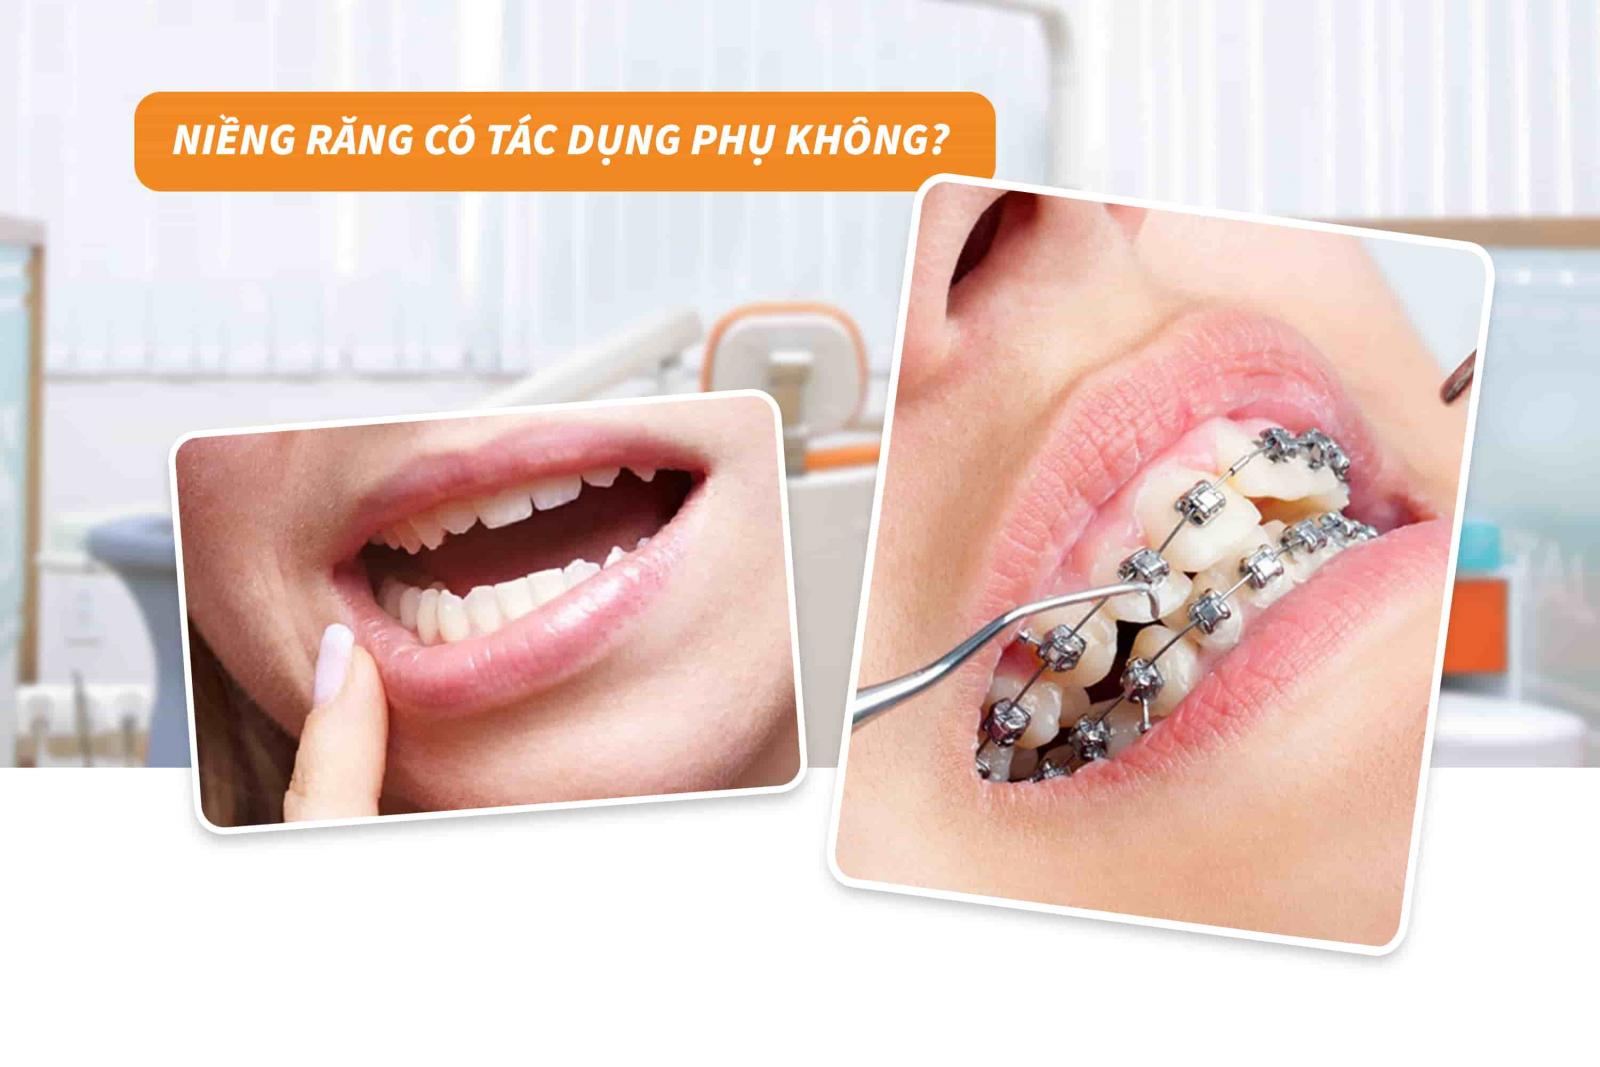 Niềng răng có tác dụng phụ không?